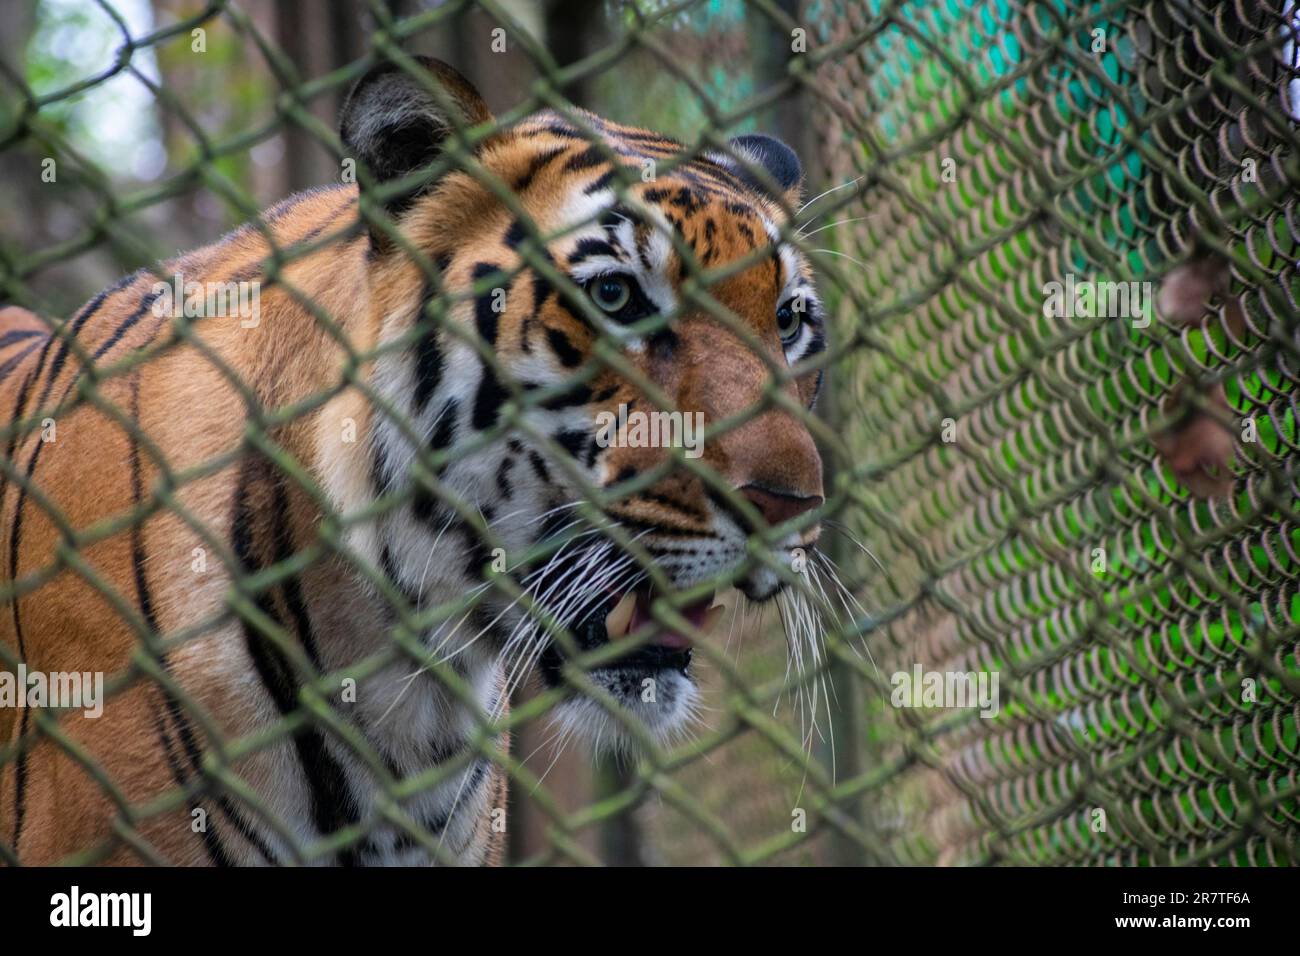 DARJEELING, INDIA, MAY 24: A royal Bengal tiger inside an enclosure at Padmaja Naidu Himalayan Zoological Park, in Darjeeling, India on May 24, 2023. Stock Photo